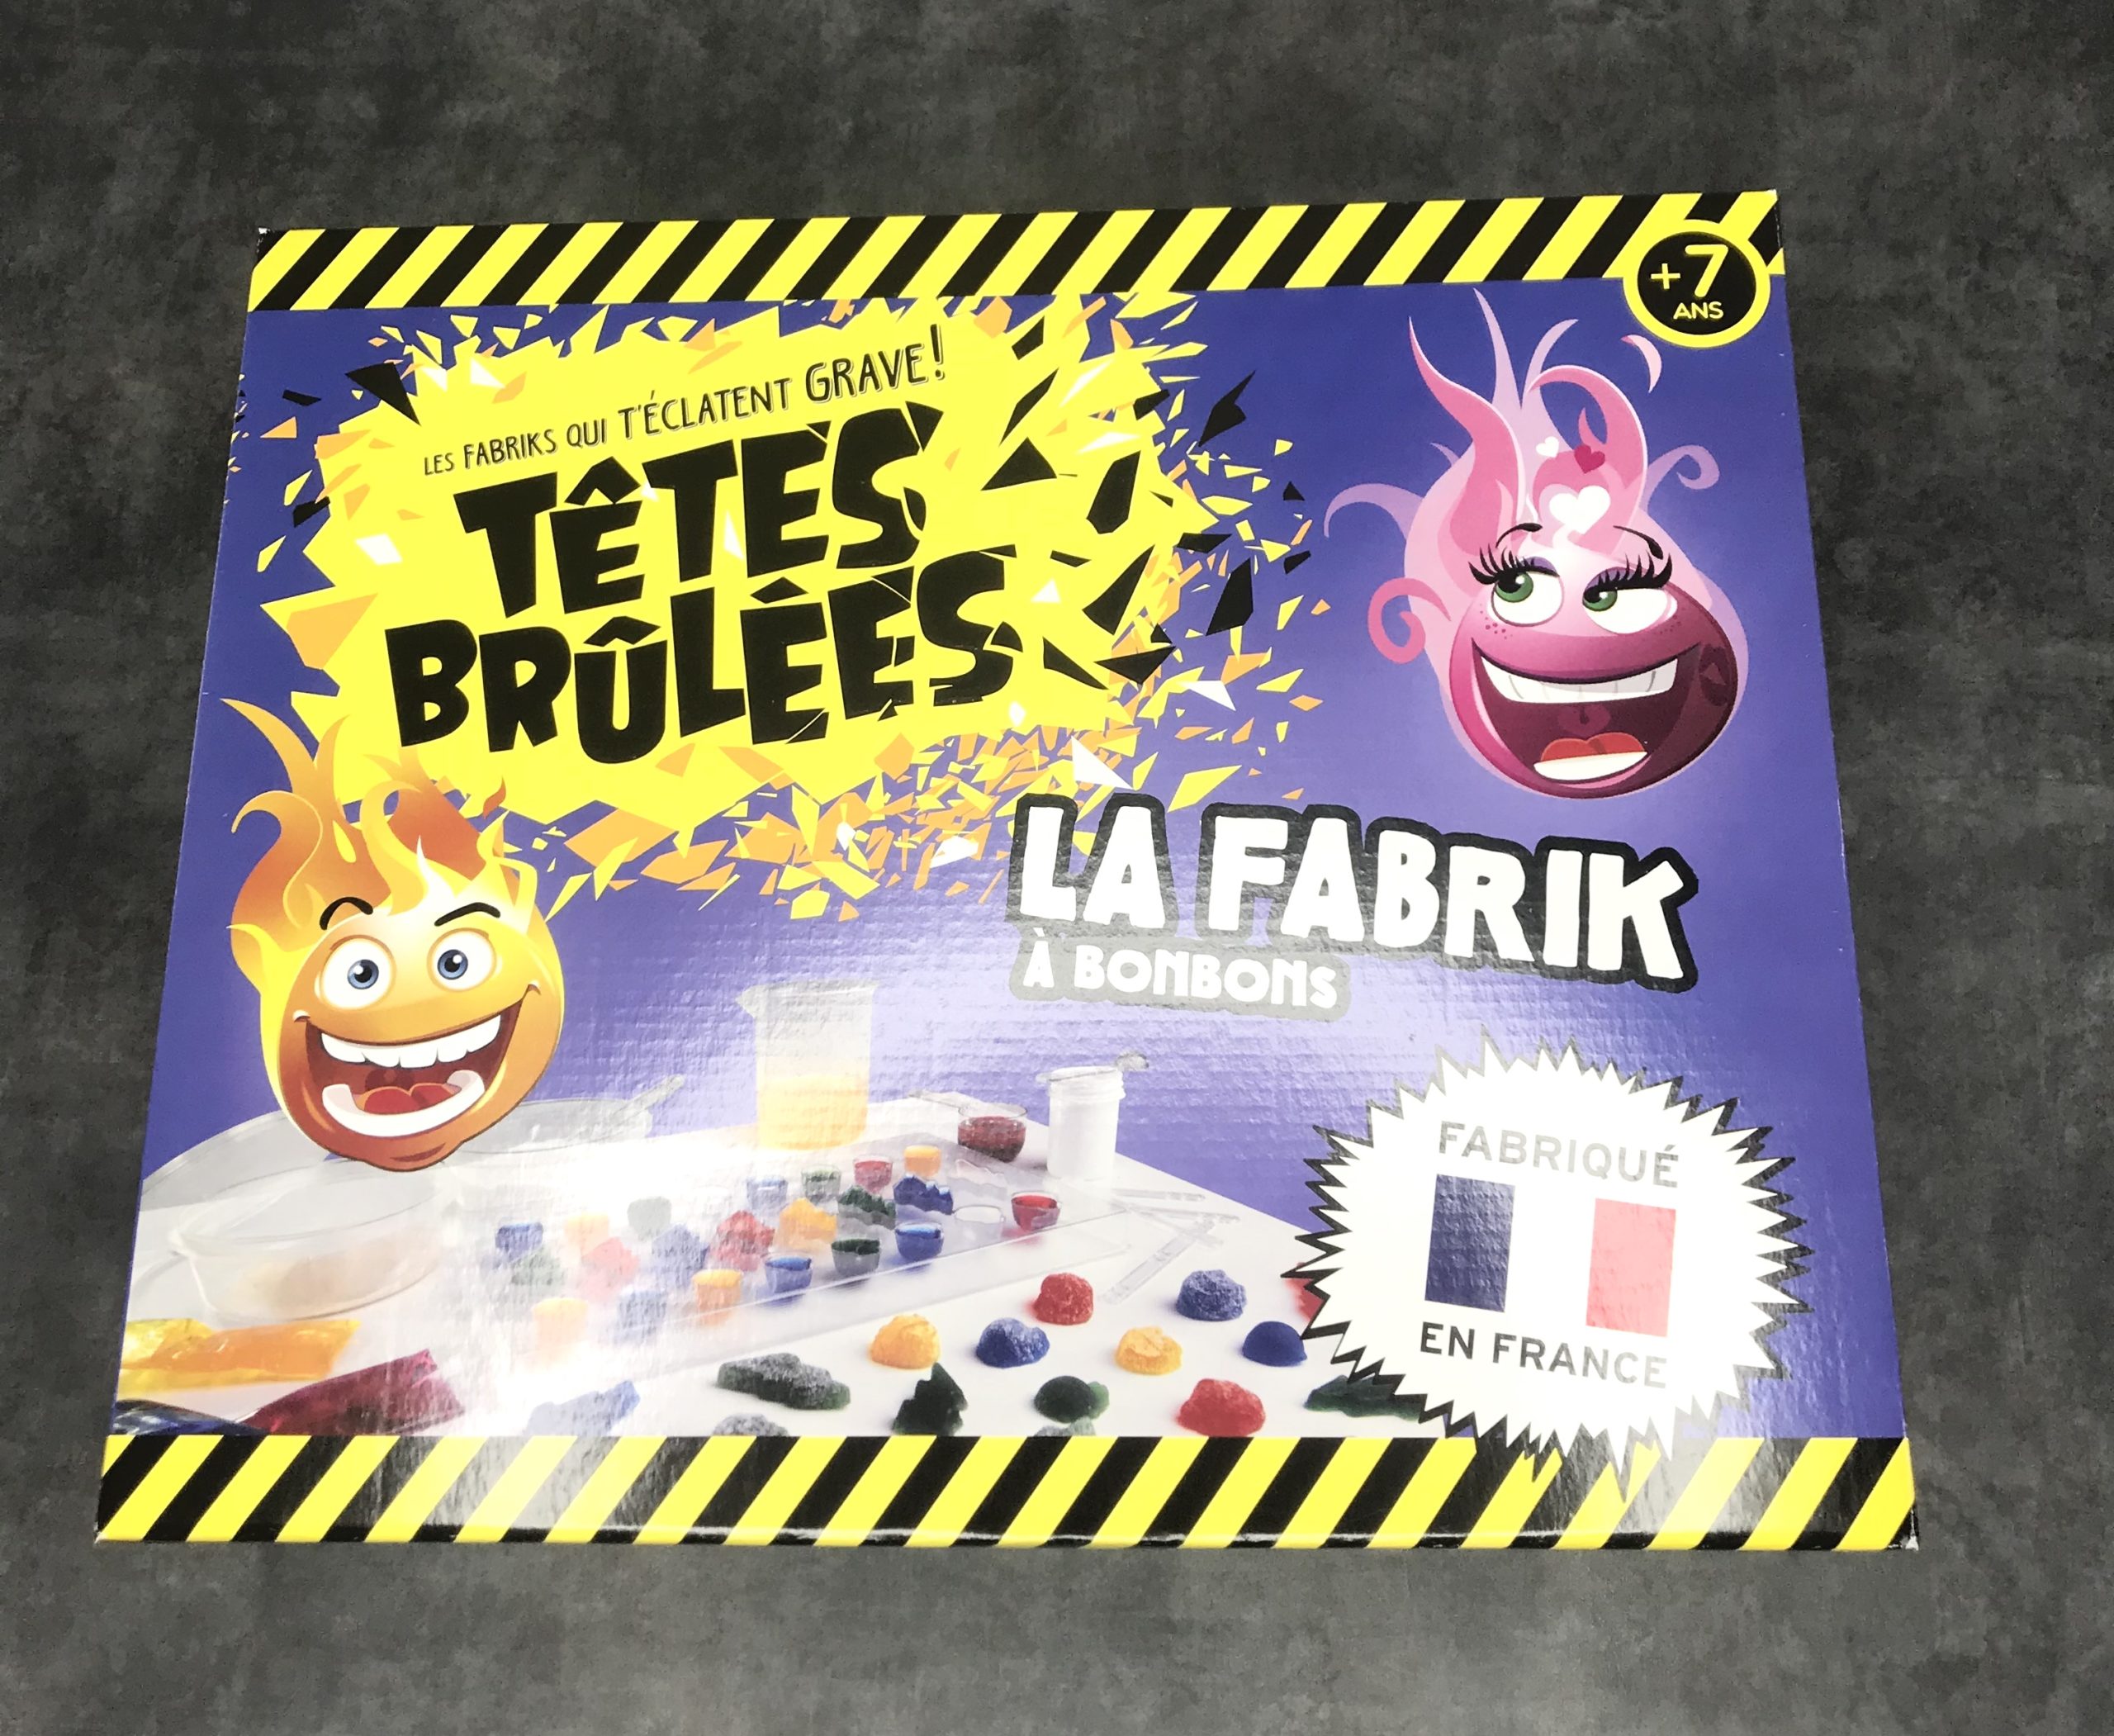 Le coffret La Fabrik à Bonbons Têtes Brûlées - HelloBeautyMag